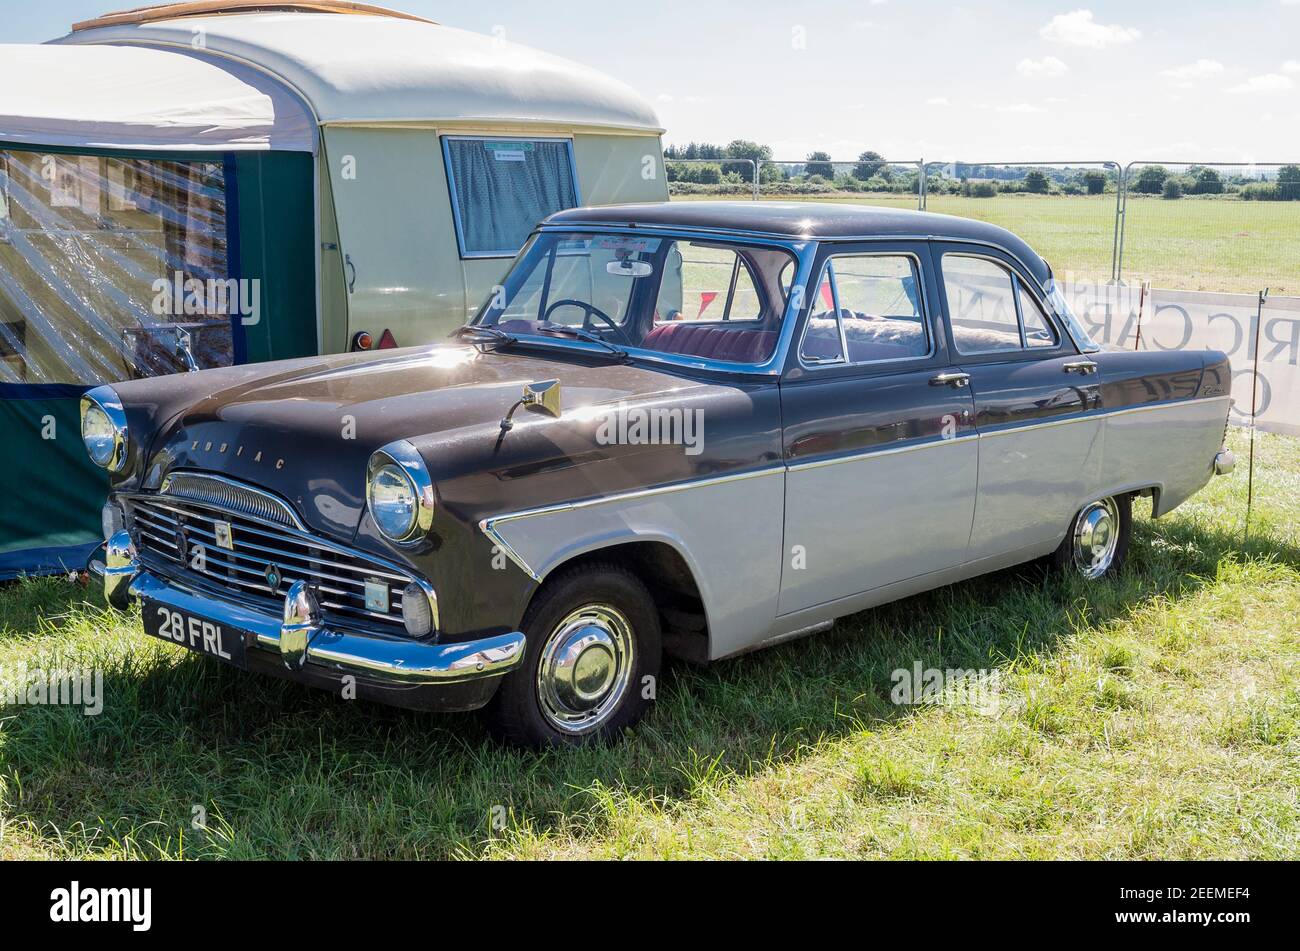 Una vieja berlina ejecutiva Ford Zodiac restaurada y usada para remolque de una pequeña caravana de gira para espectáculos y eventos en El Reino Unido Foto de stock